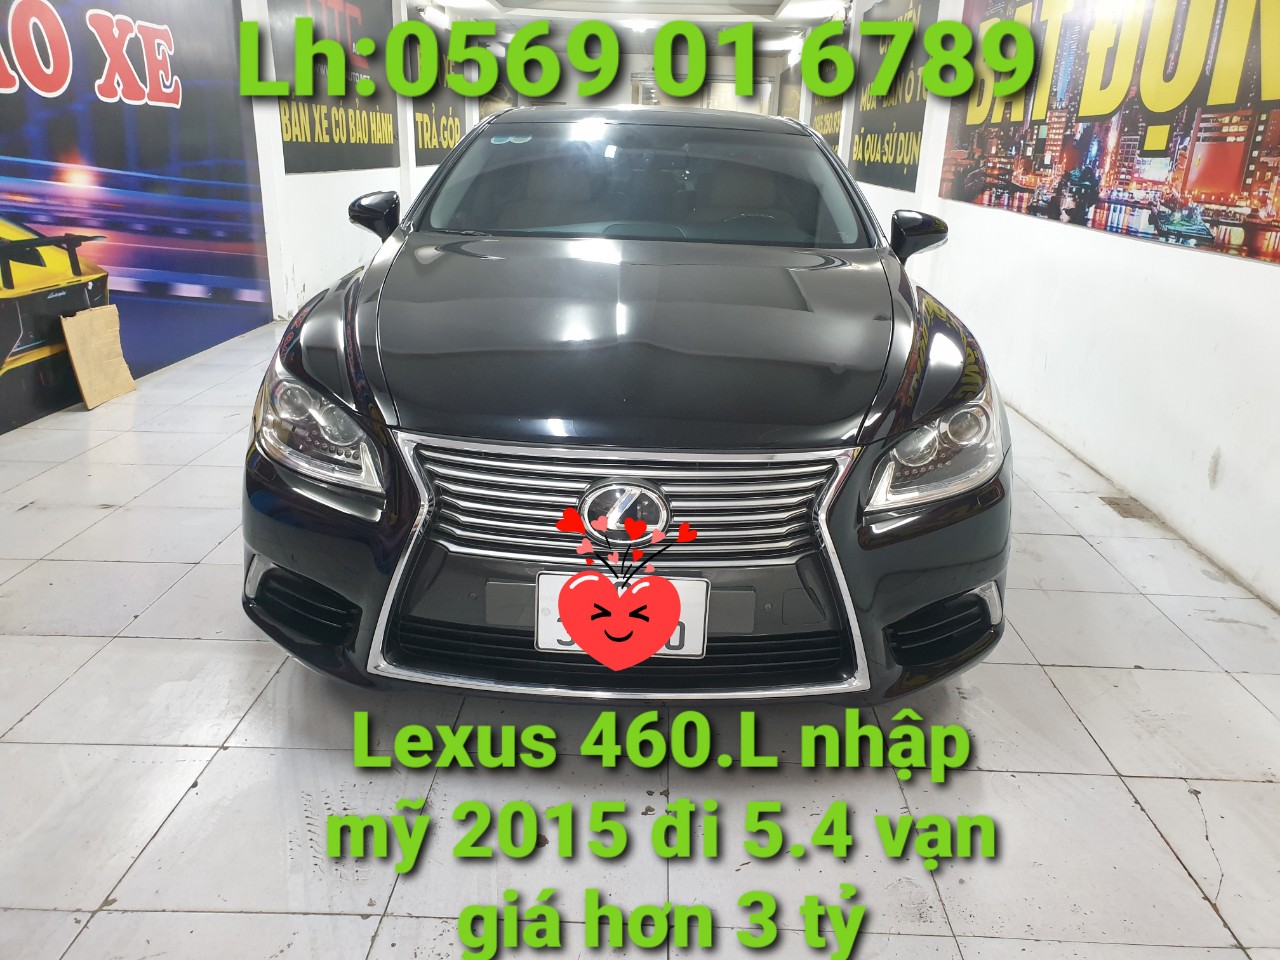 Lexus LS460.L nhập mỹ 2015 ra đi tìm chủ mới